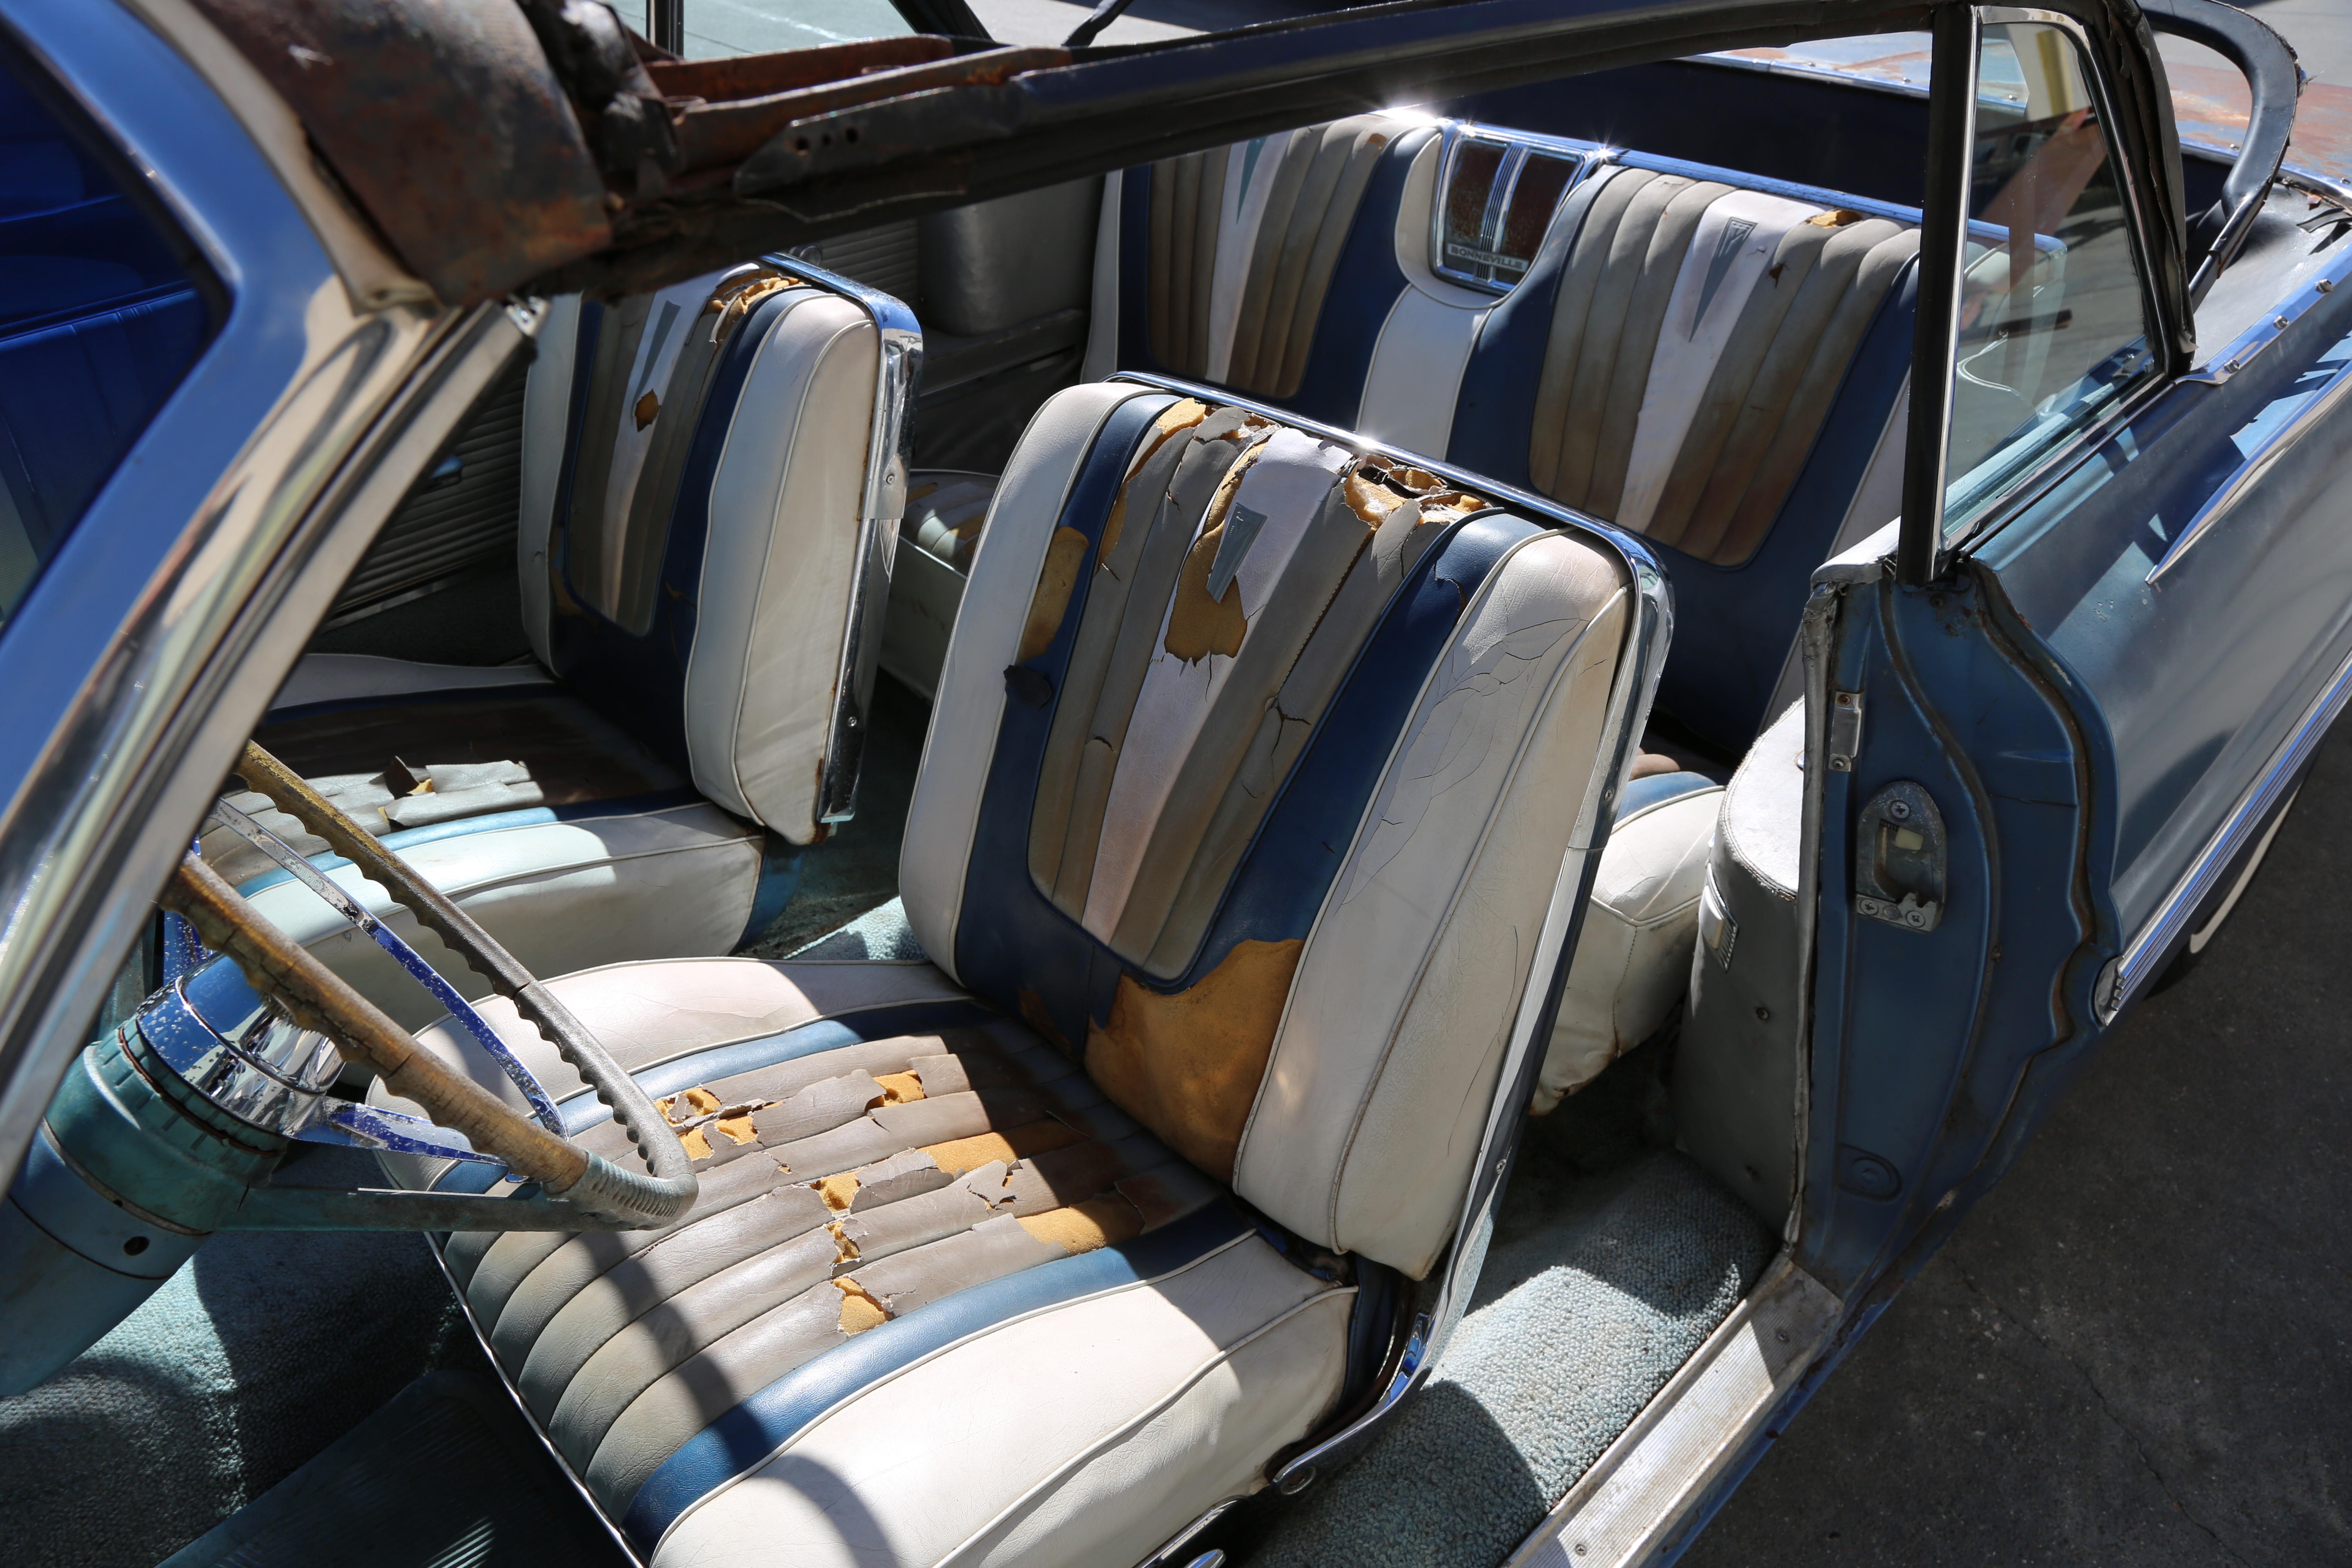 1962, Pontiac, Bonneville, 62, Convertible, cars for sale, Cars, For, sale